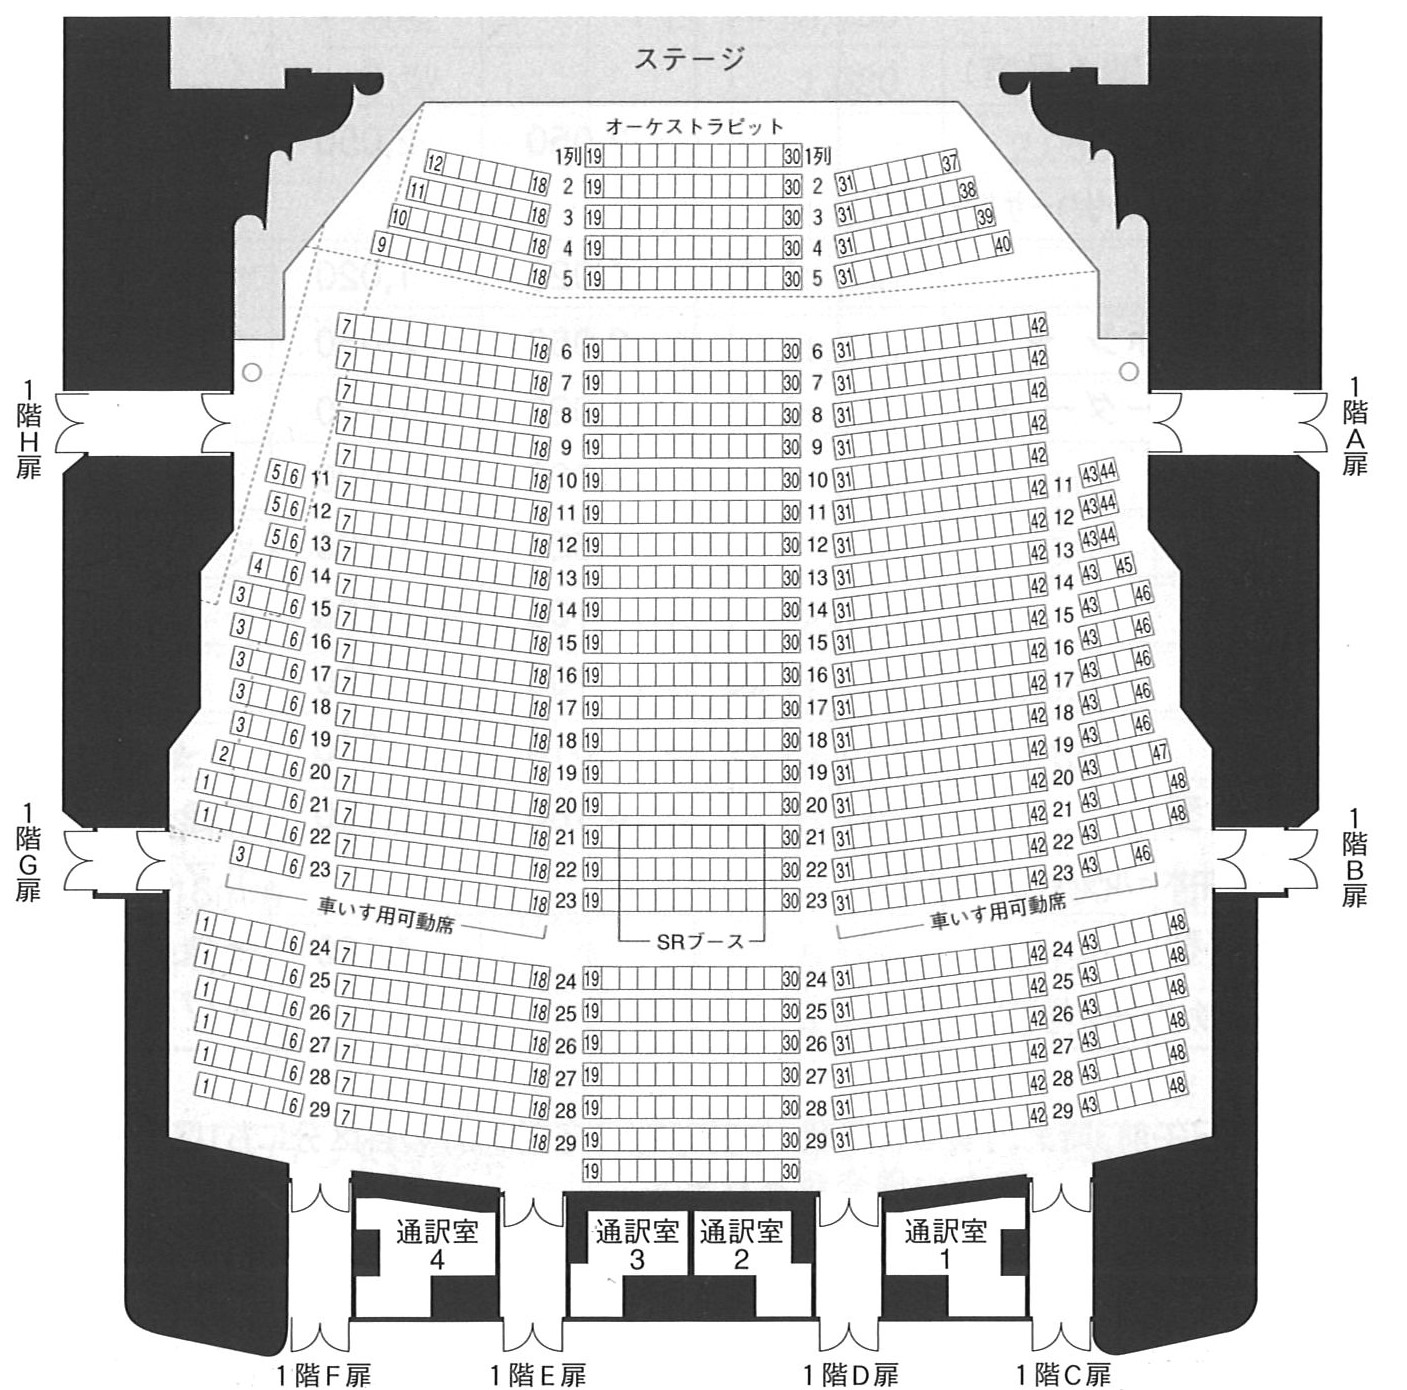 アクトシティ浜松1階座席表